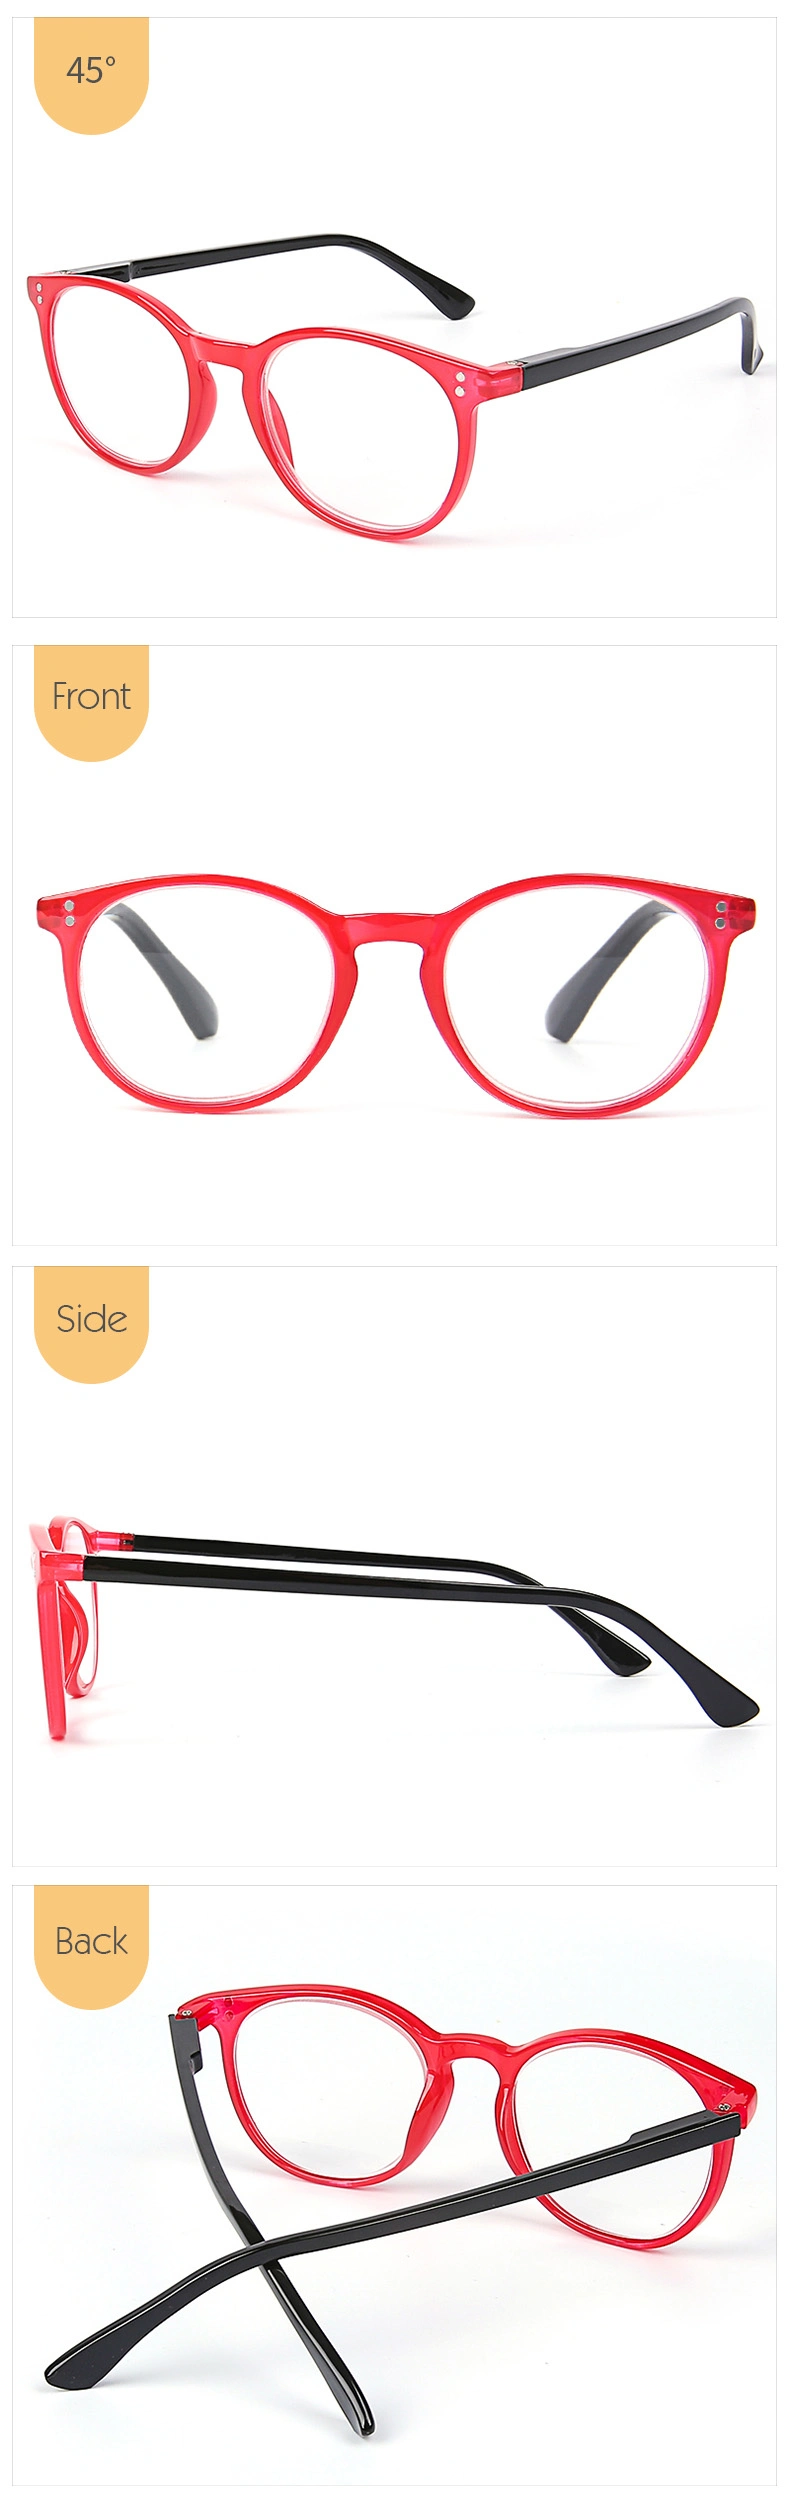 New Style Gafas De Lectura Fashionable Retro Reading Glasses